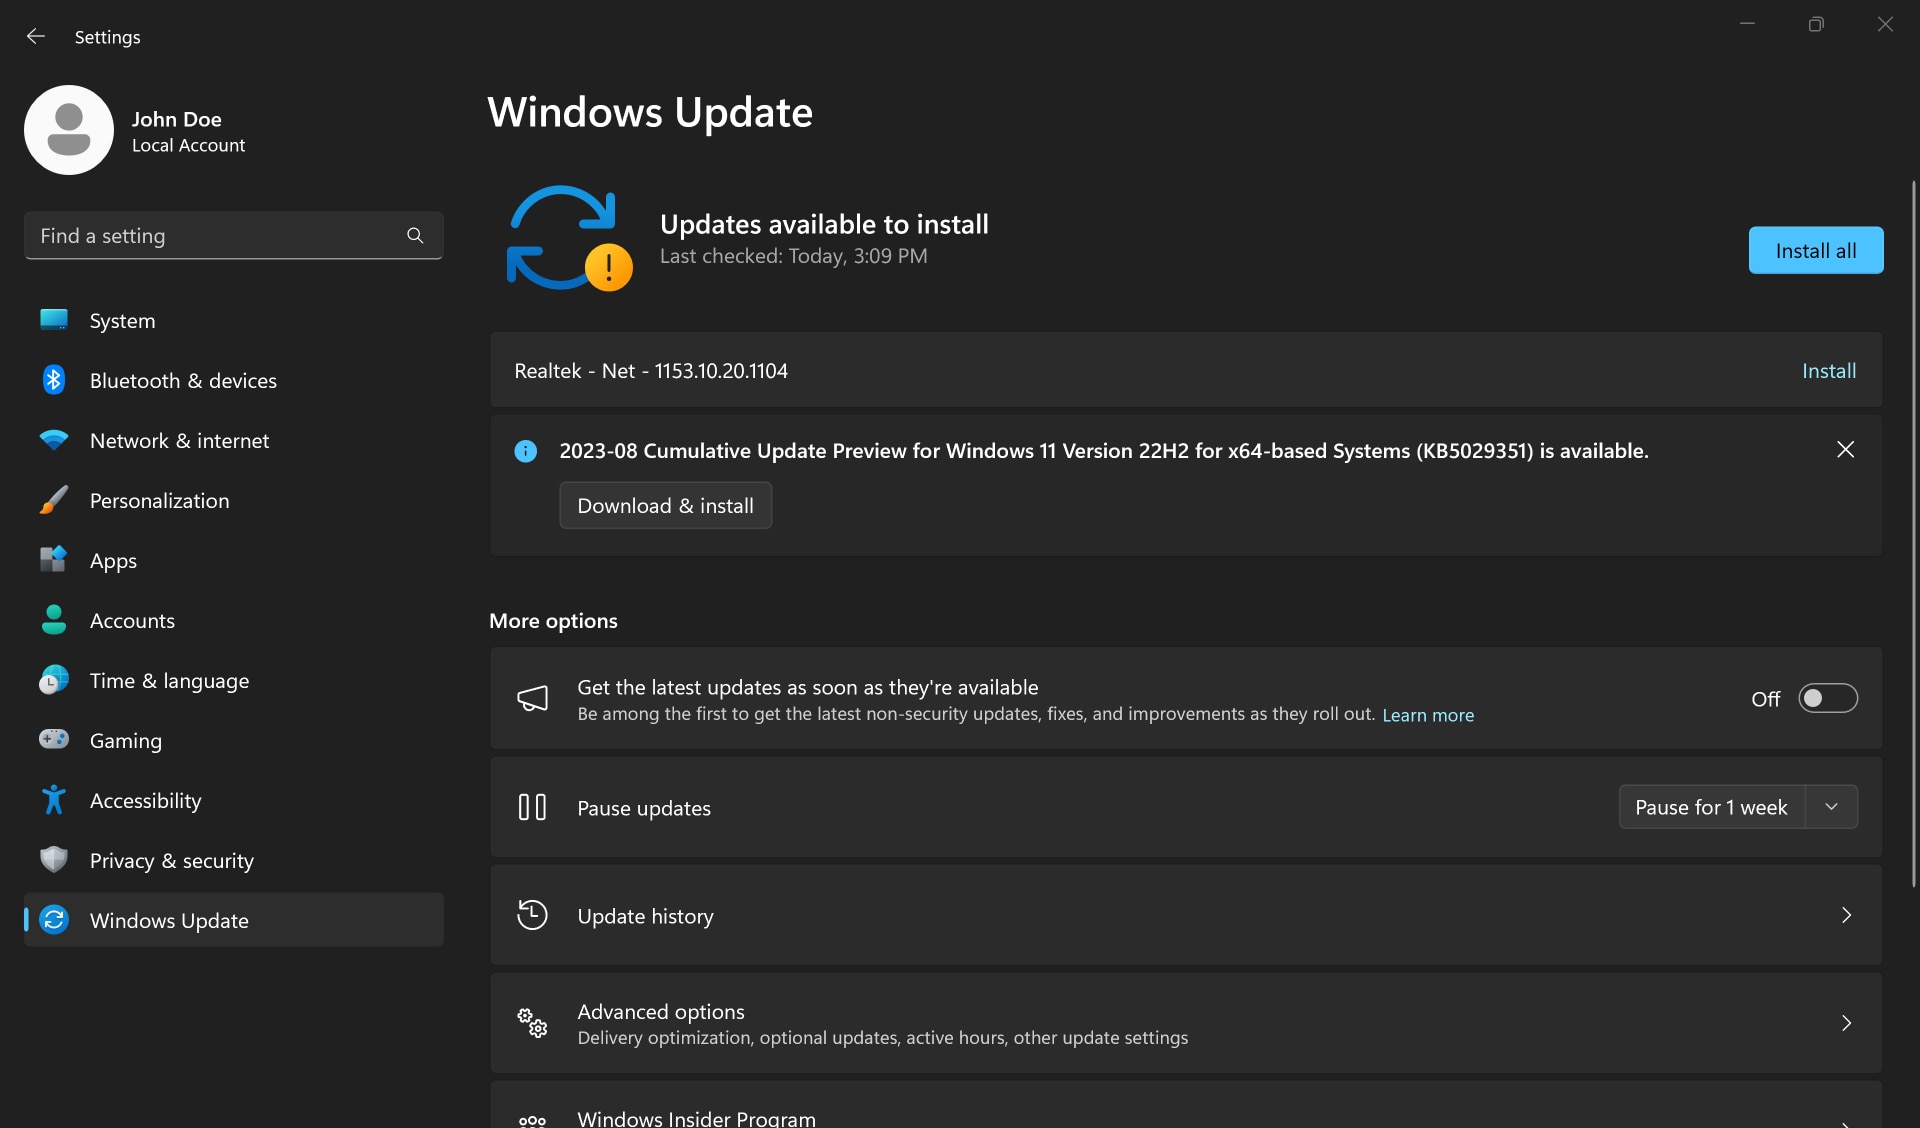 Bouton Installer tout dans les paramètres Windows Update